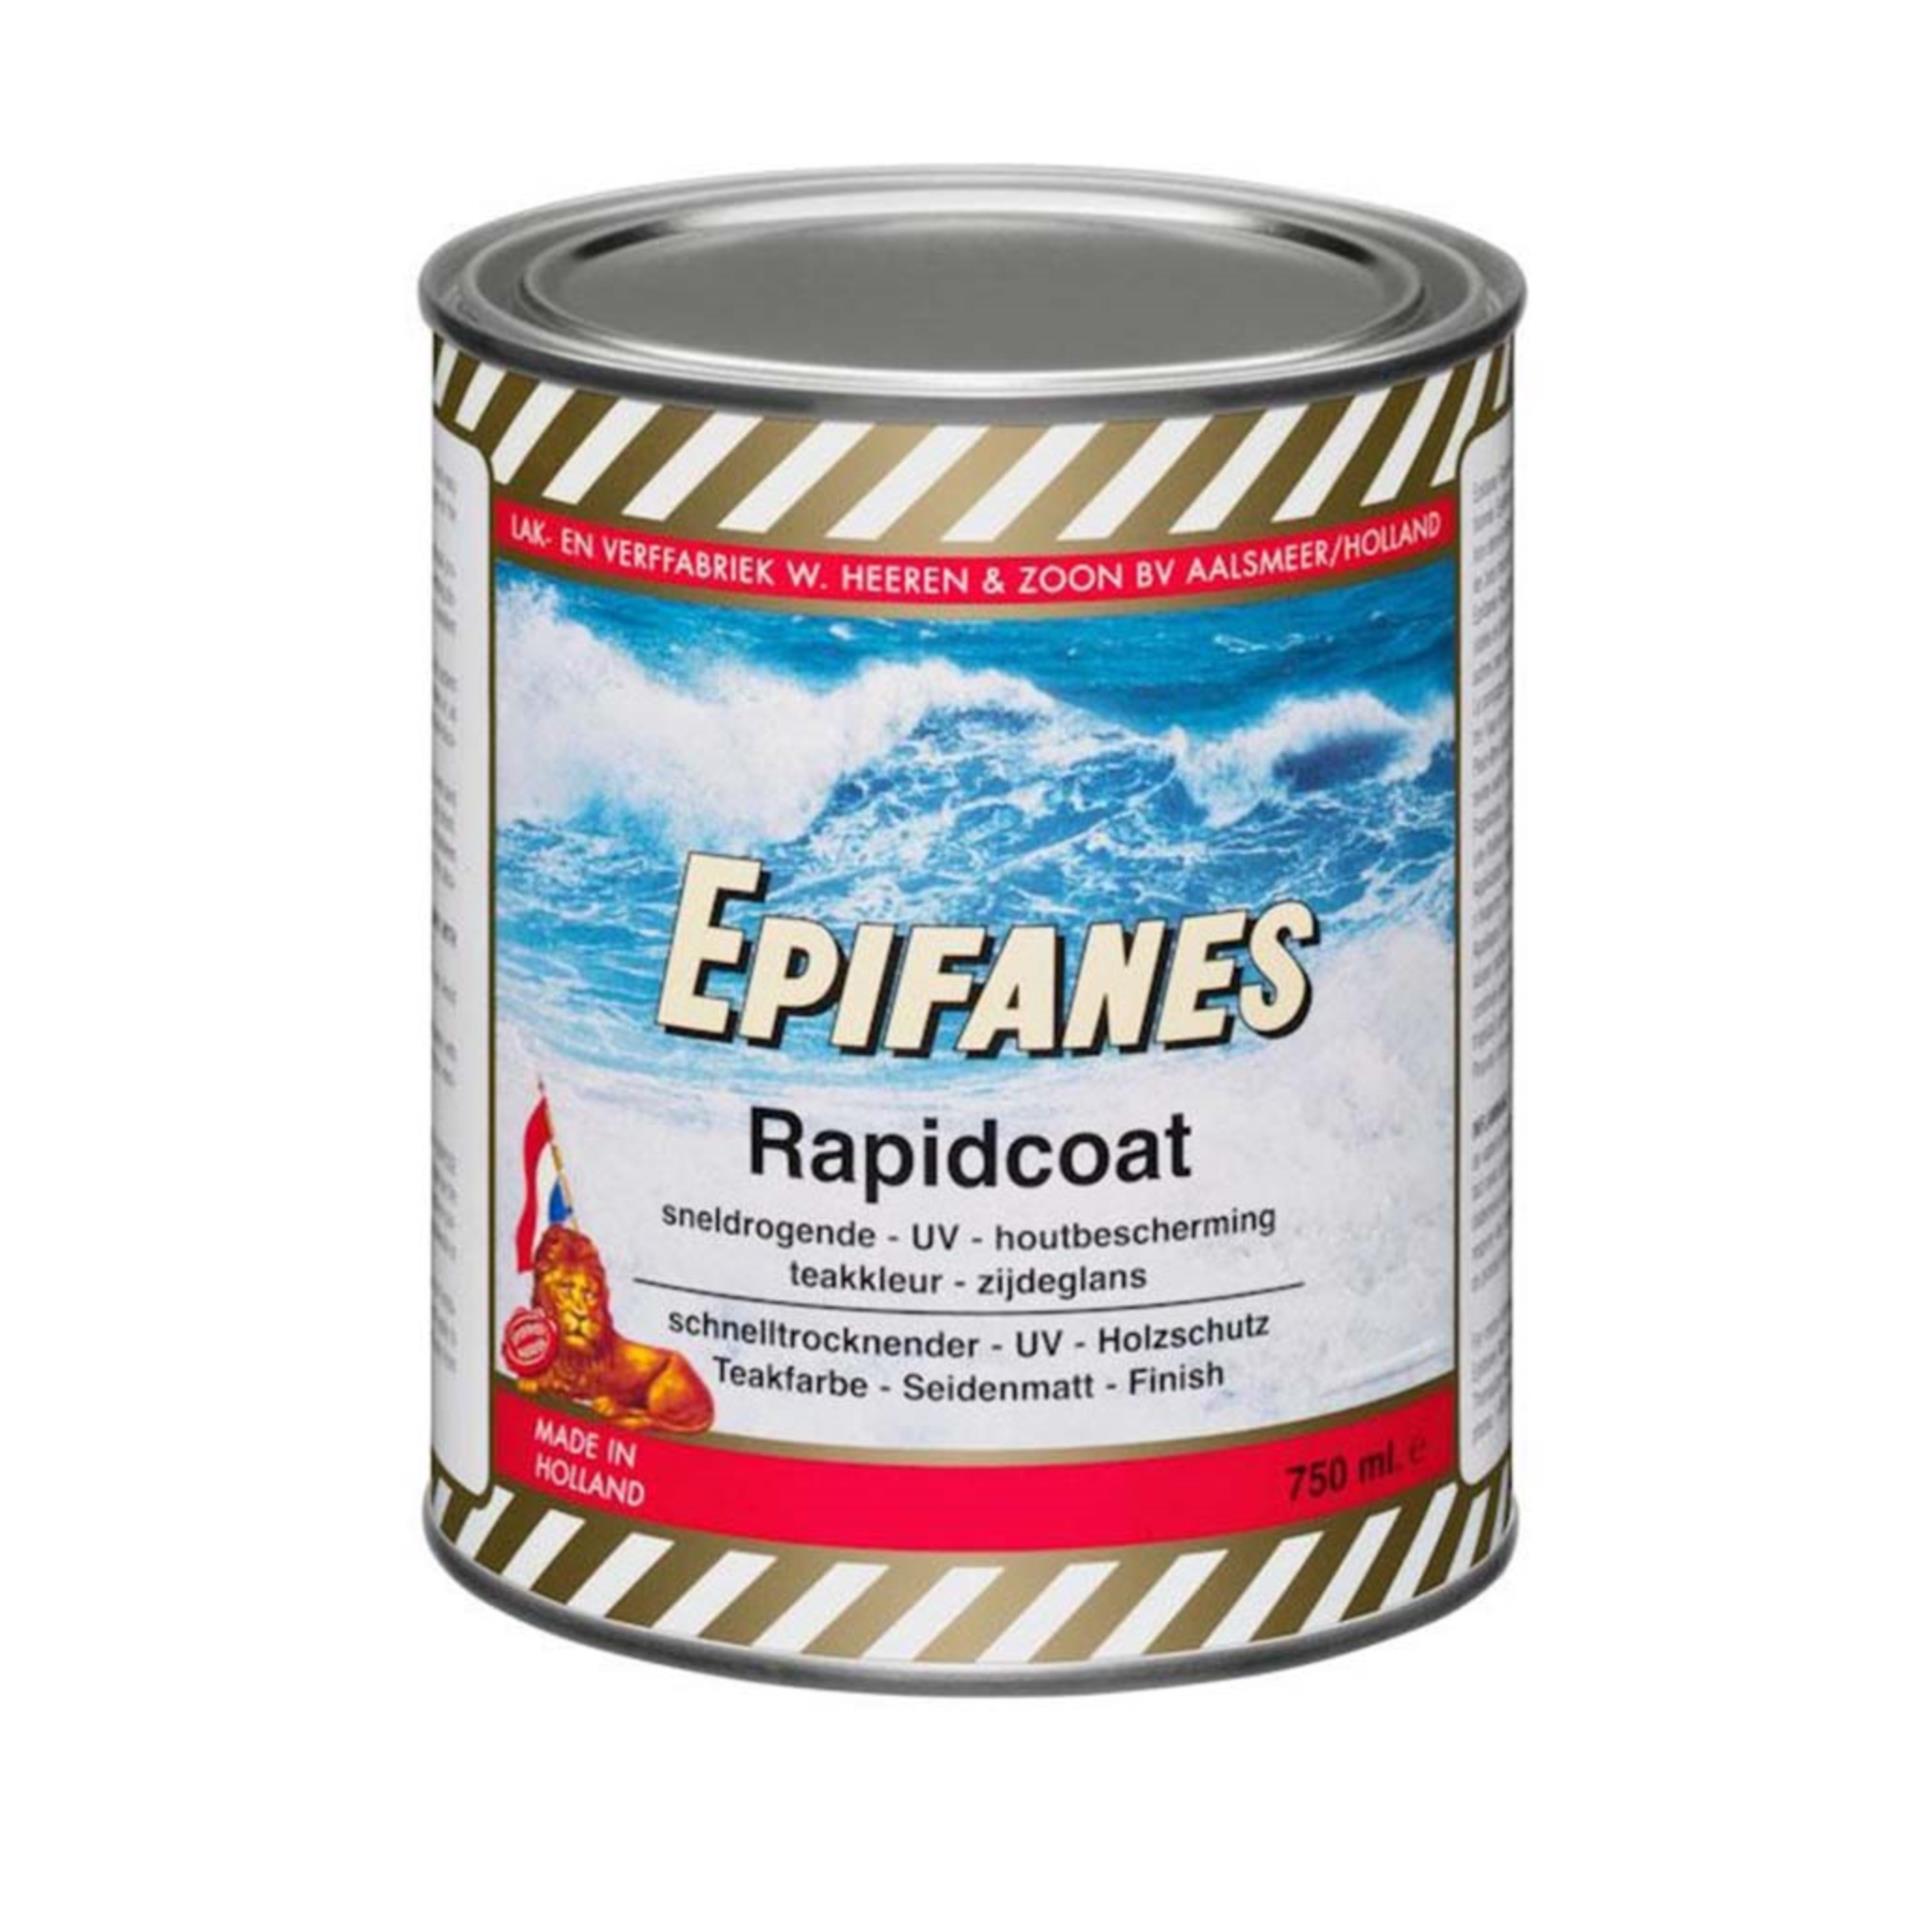 Epifanes Rapidcoat, 750 ml